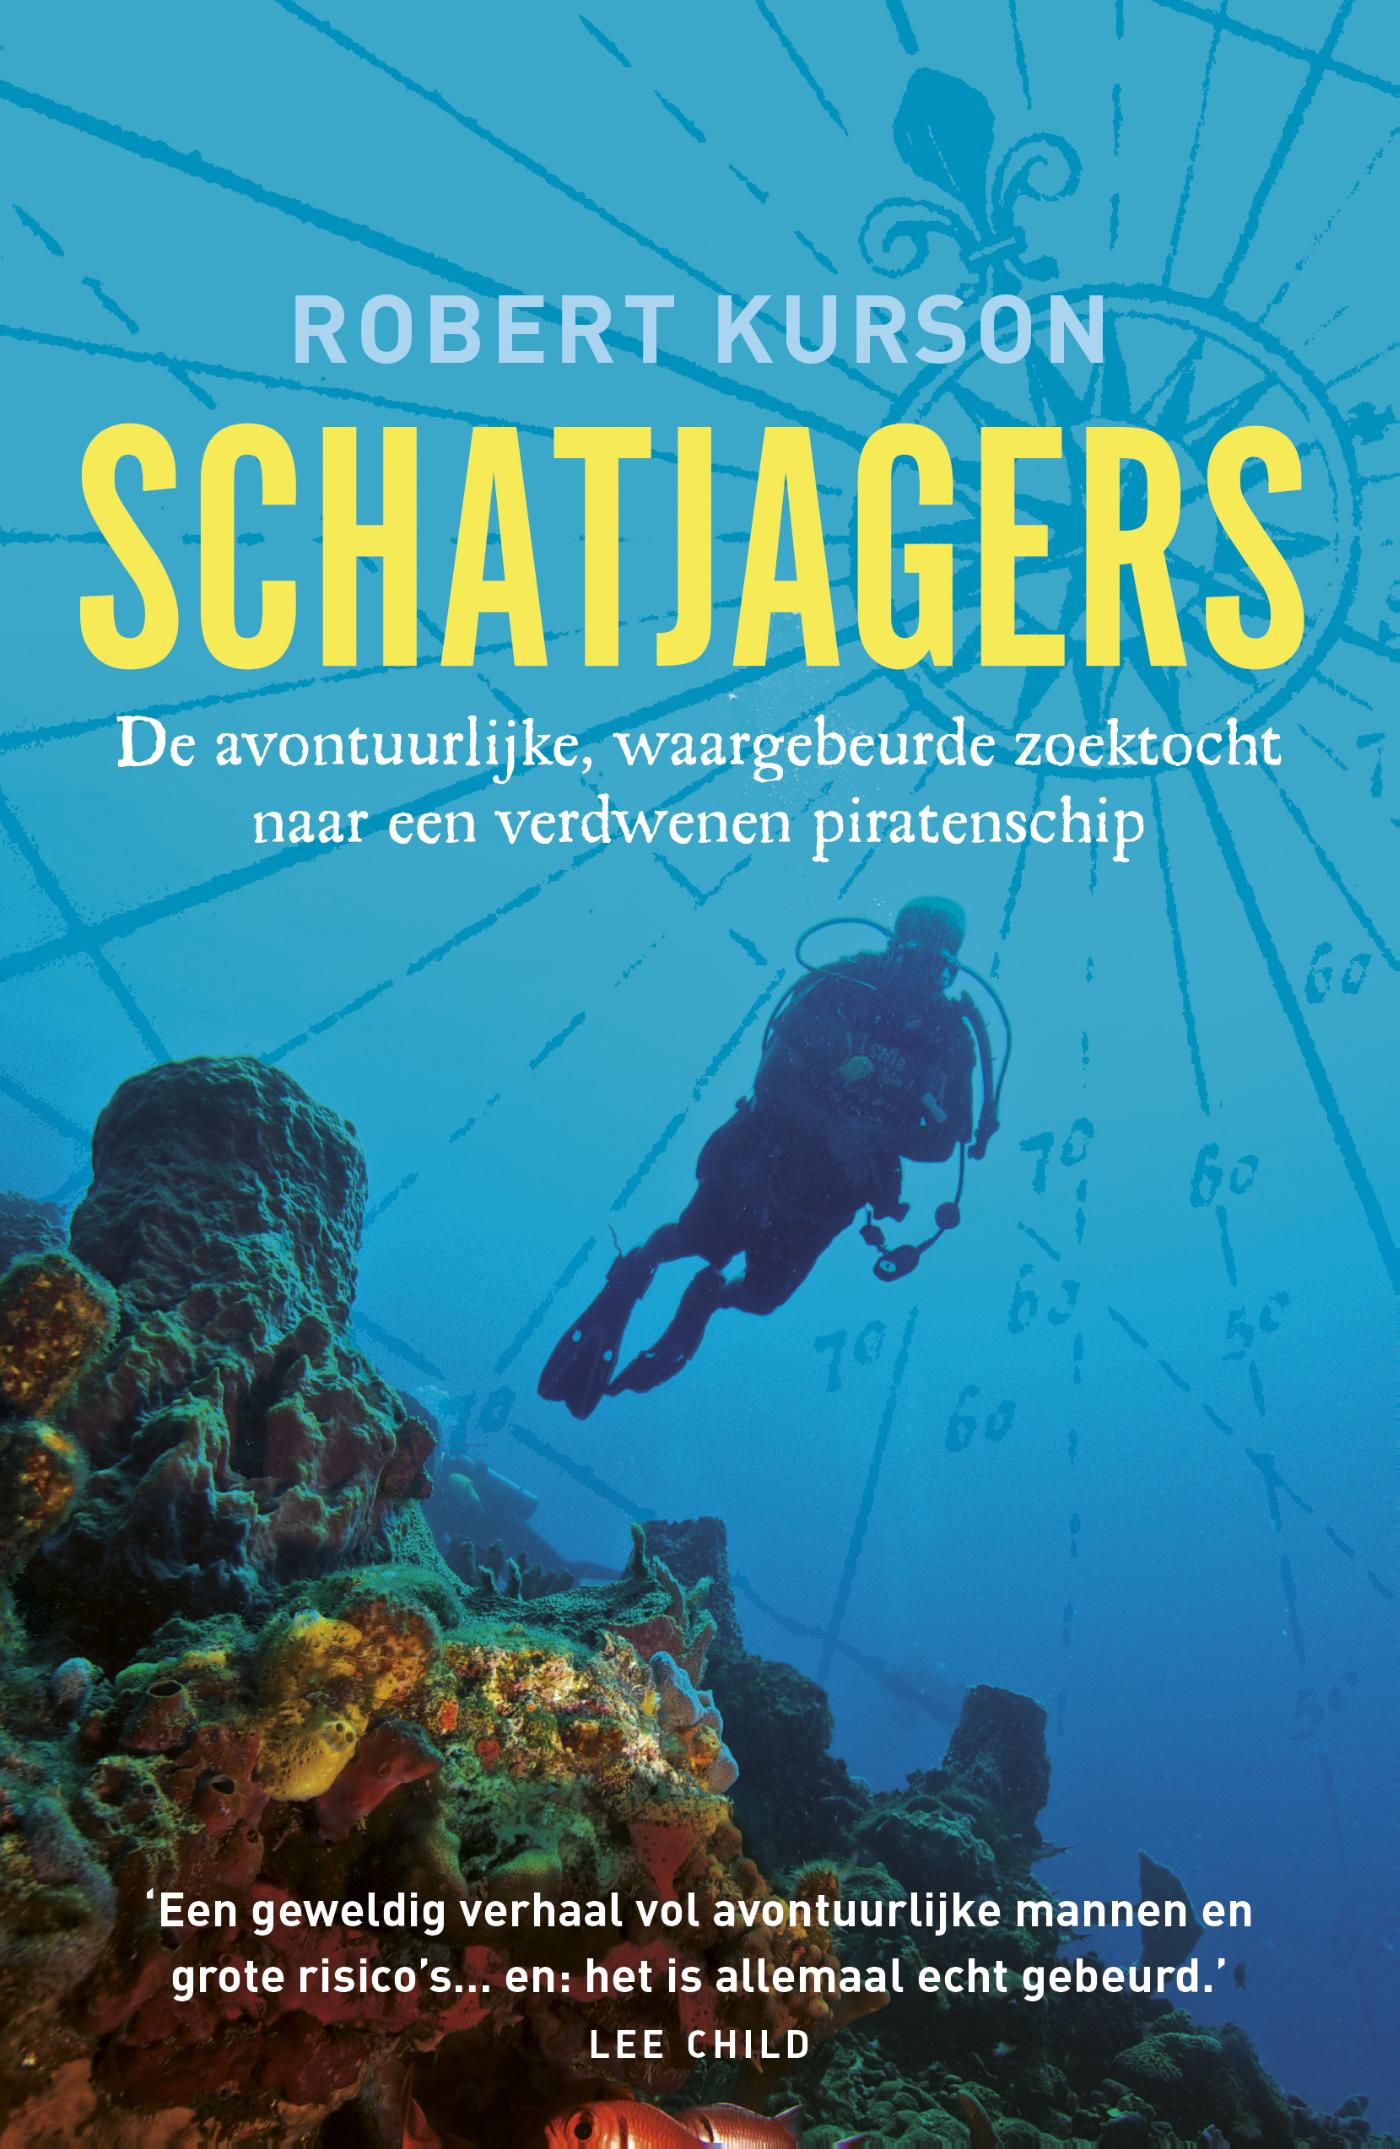 Schatjagers (Ebook)